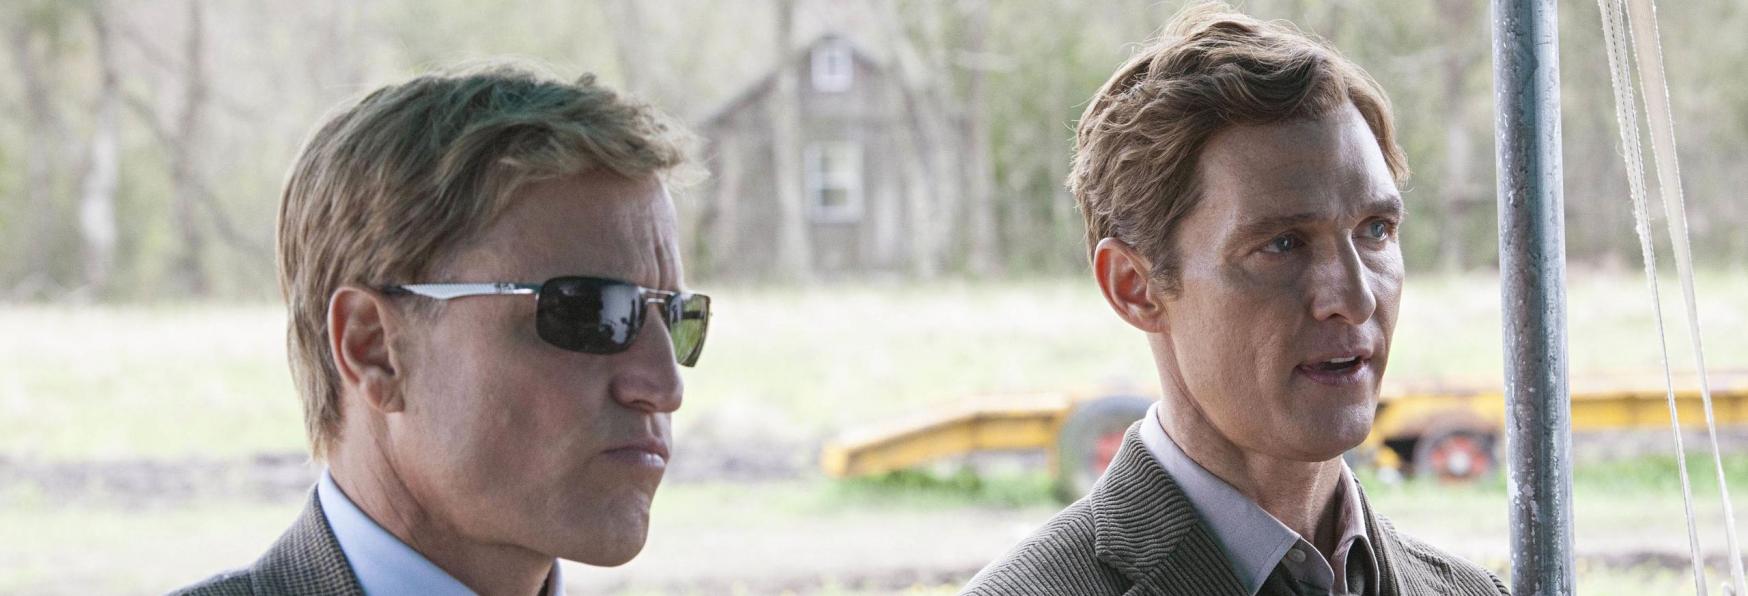 Matthew McConaughey e Woody Harrelson protagonisti della nuova Serie TV di Apple TV+